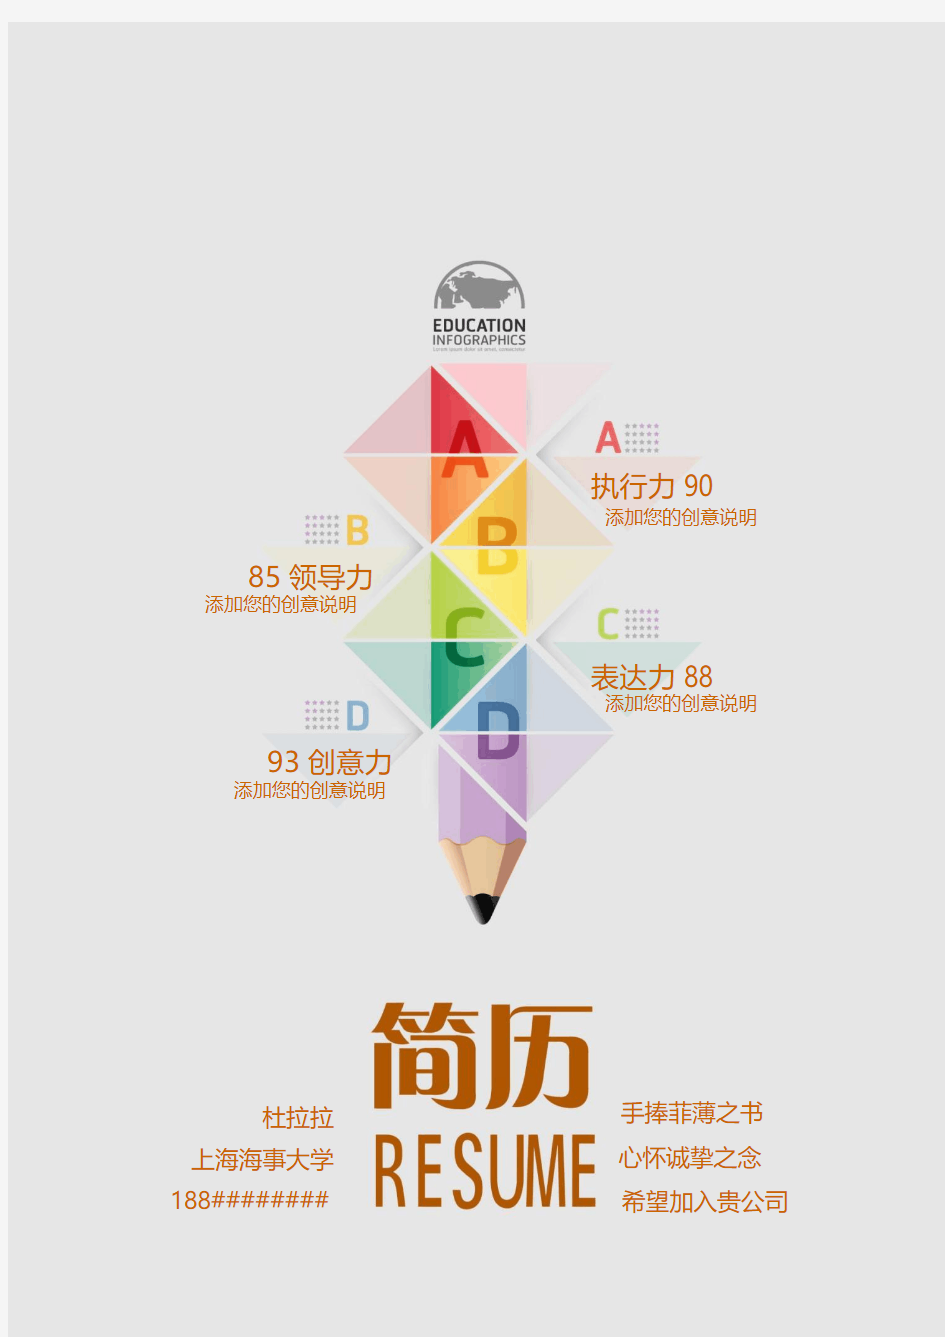 上海海事大学创意毕业生求职个人简历模板【封面+自荐书+简历+封底】